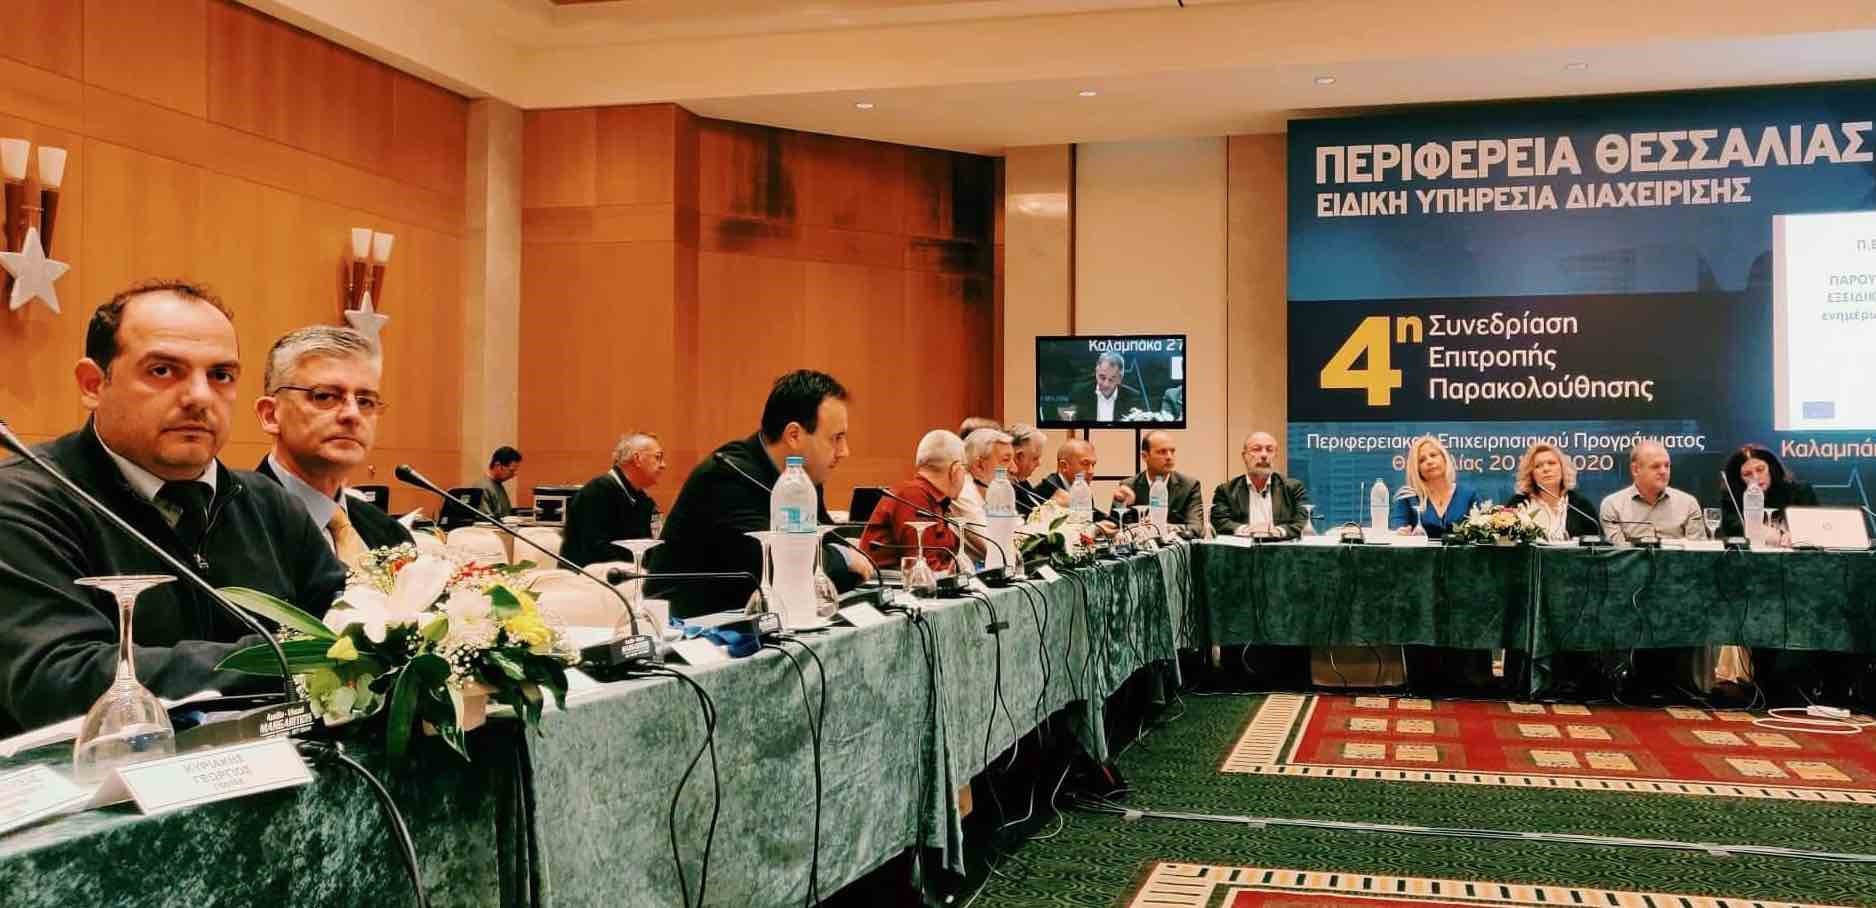 Παρέμβαση του ΤΕΕ στην 4η Συνεδρίαση Επιτροπής Παρακολούθησης του ΠΕΠ Θεσσαλίας.